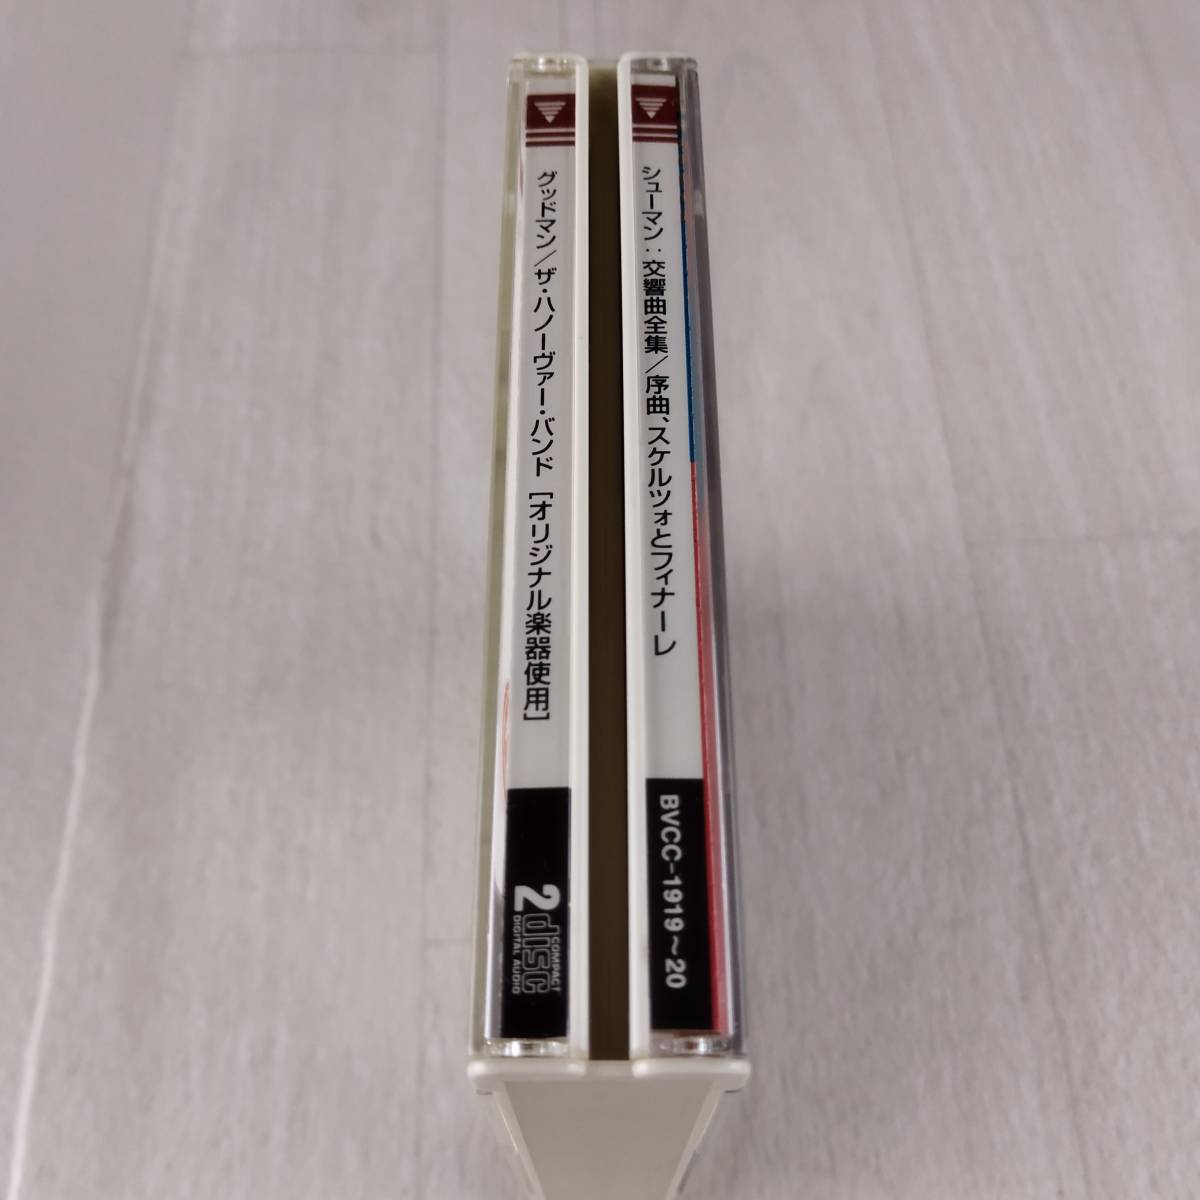 2MC1 CD ロイ・グッドマン ザ・ハノーヴァー・バンド シューマン 交響曲全集＆序曲 スケルツォとフィナーレop.52_画像6